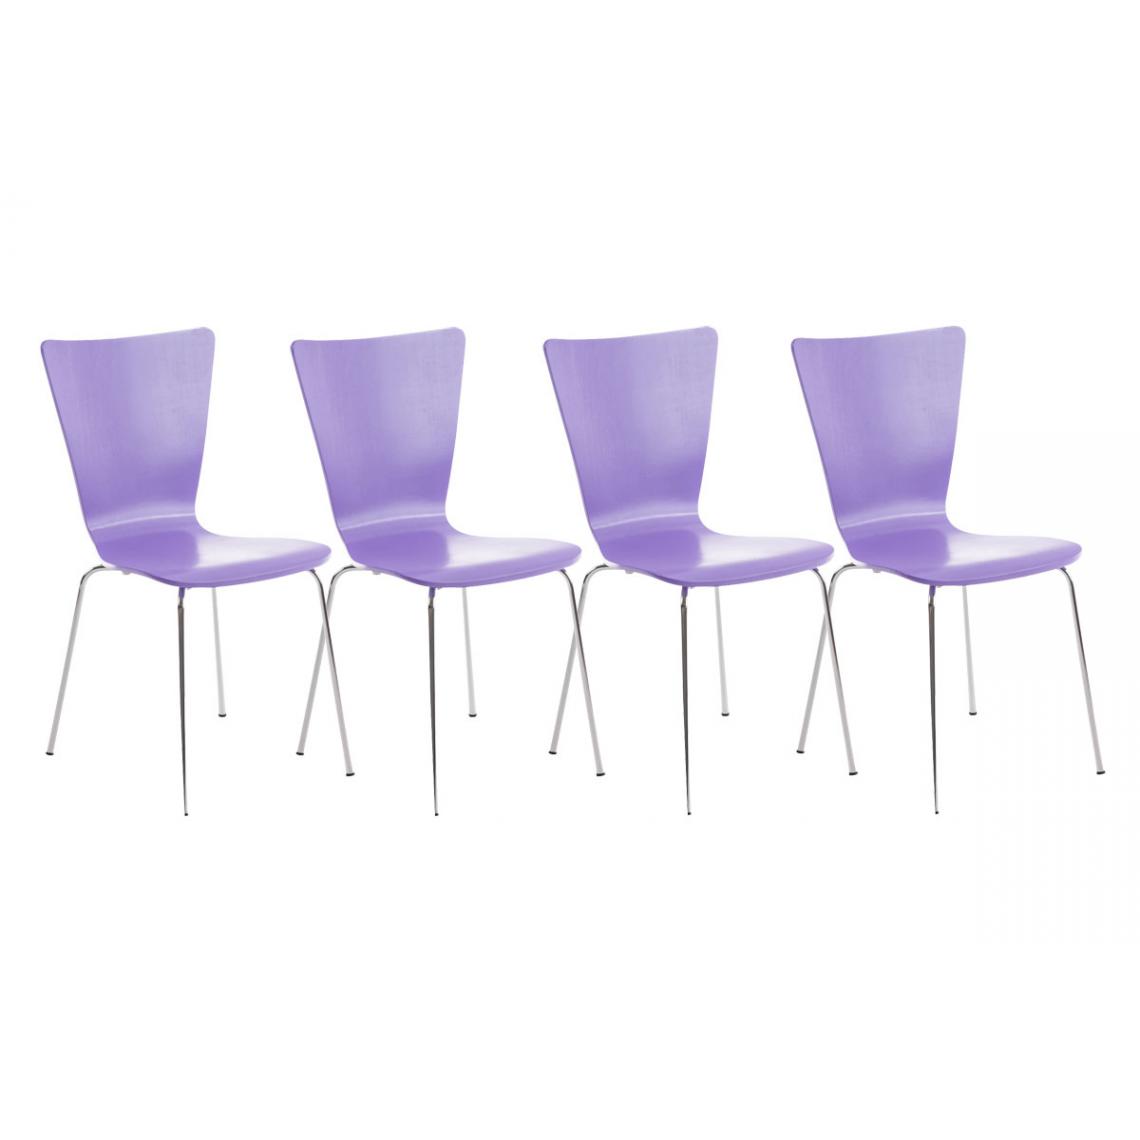 Icaverne - Stylé Lot de 4 chaises visiteurs edition Jakarta couleur violet - Chaises